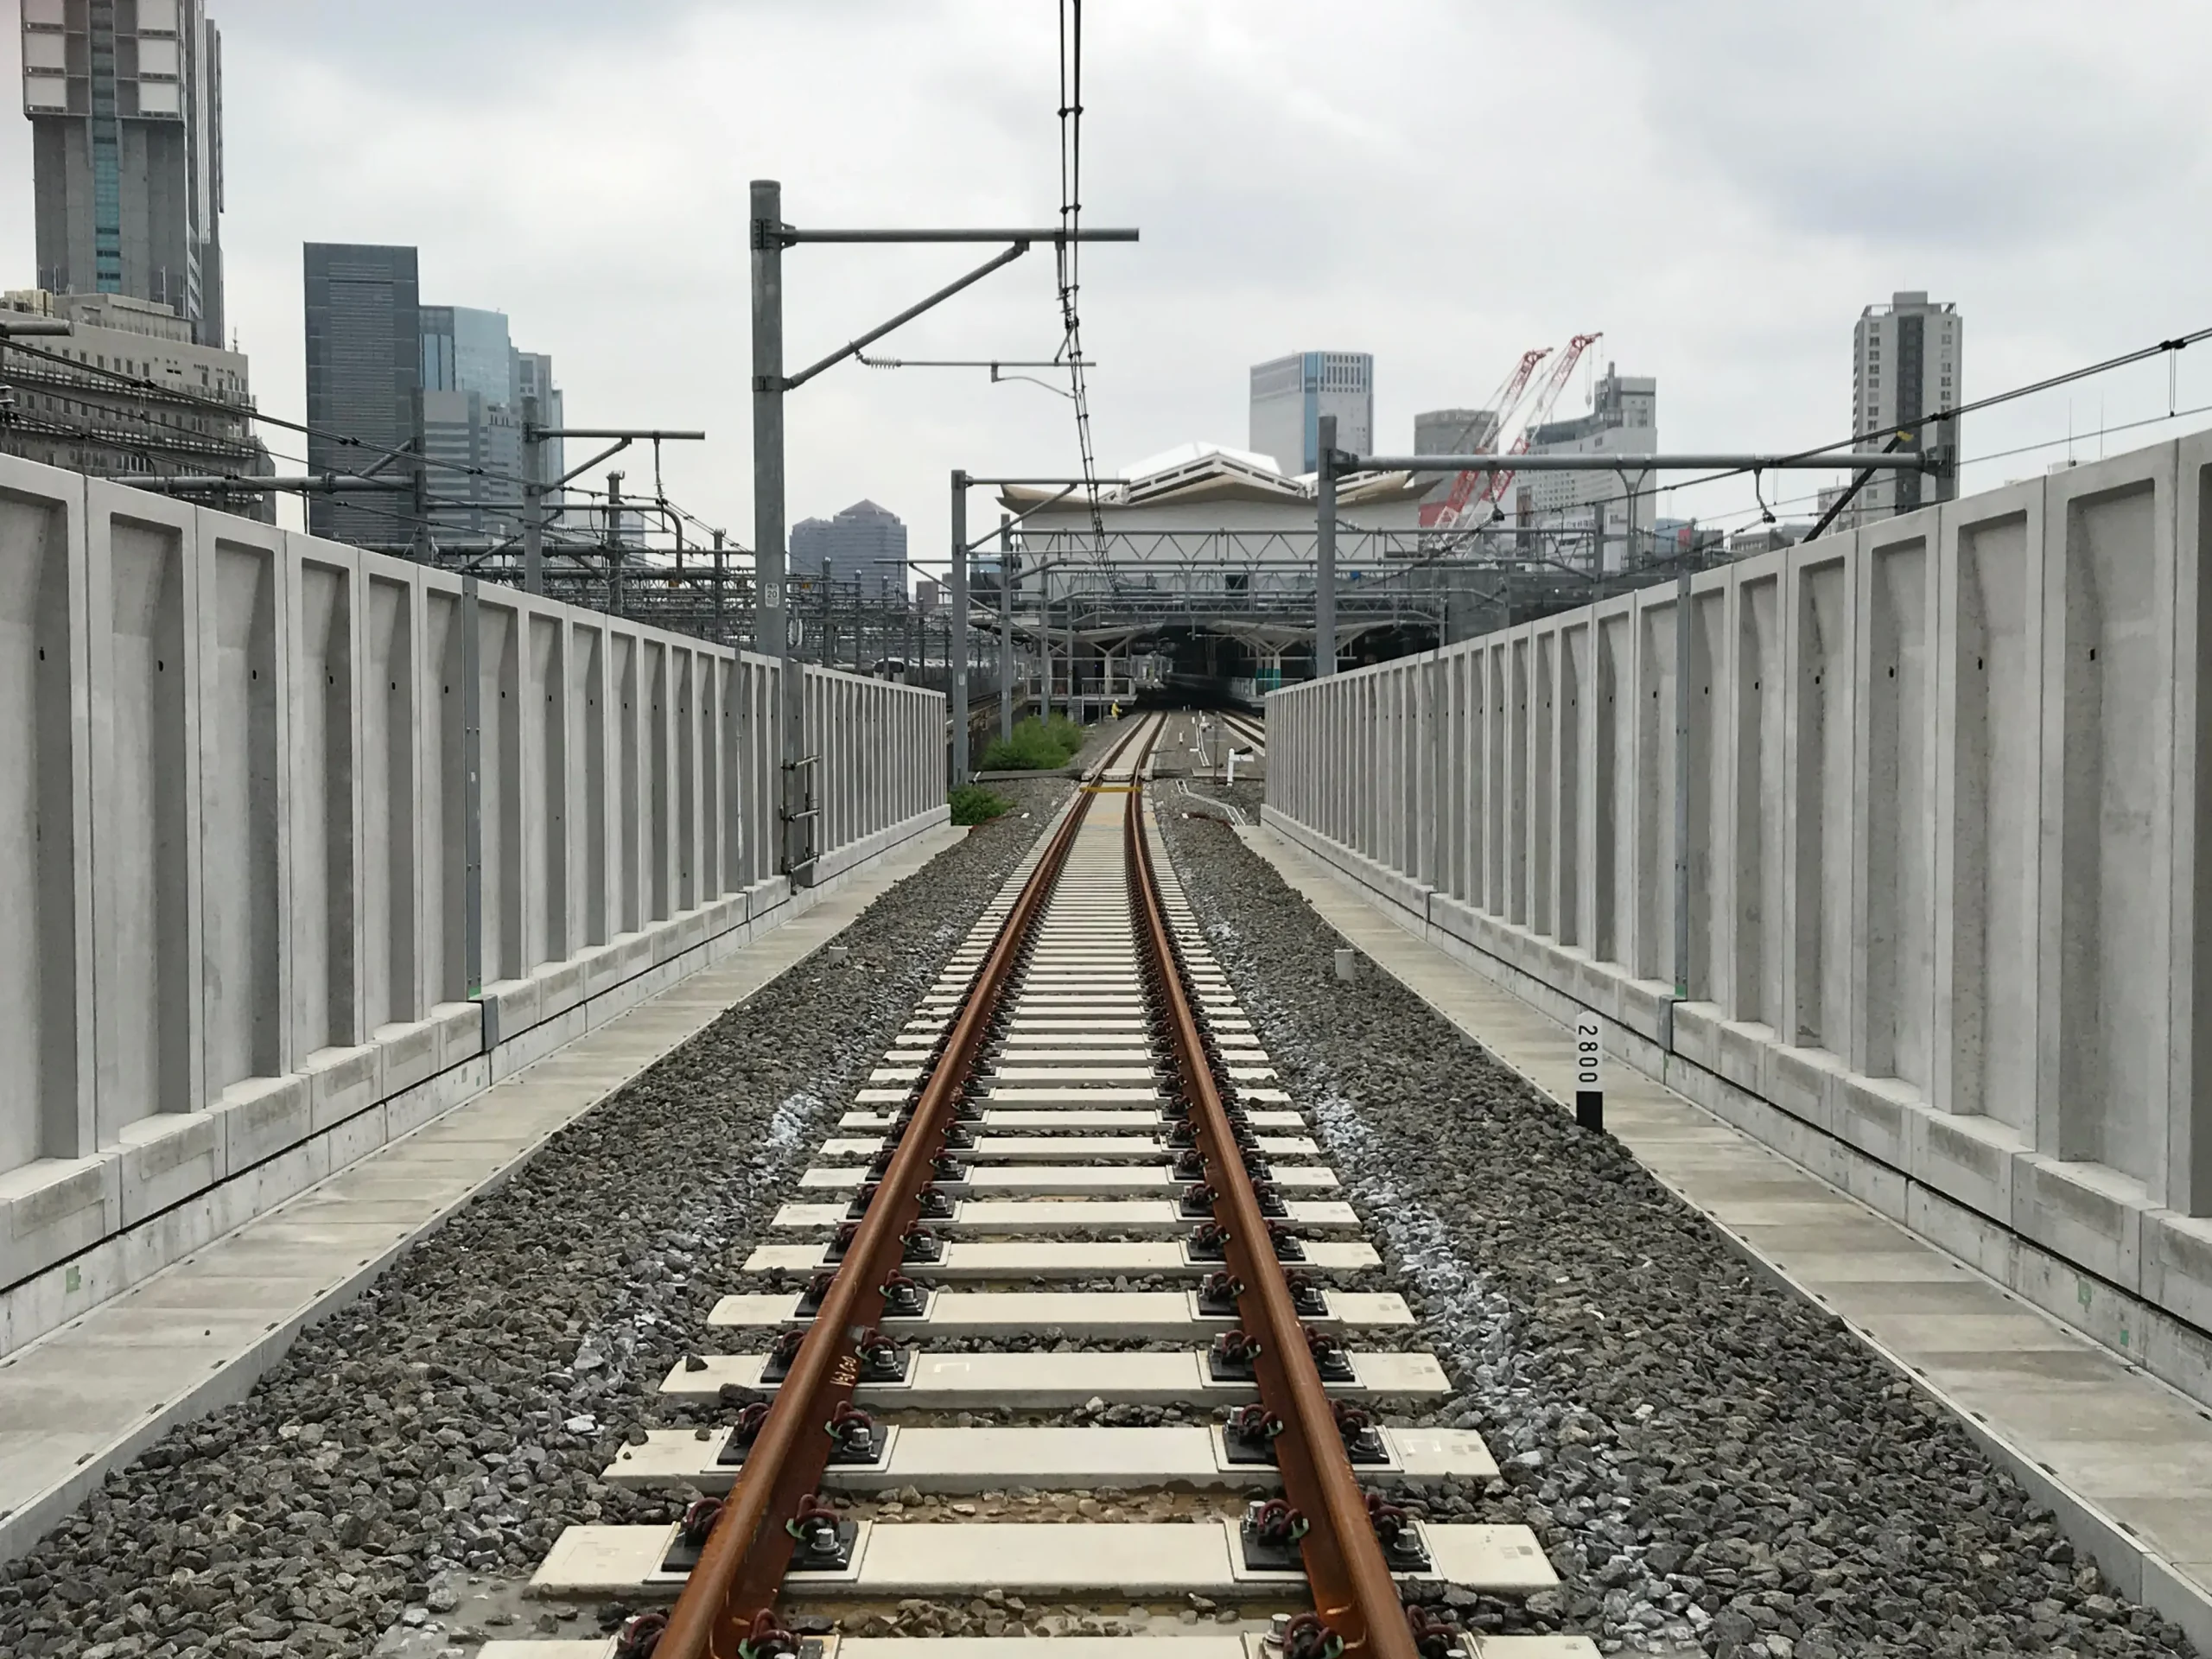 品川駅改良軌道工事のサムネイル画像です